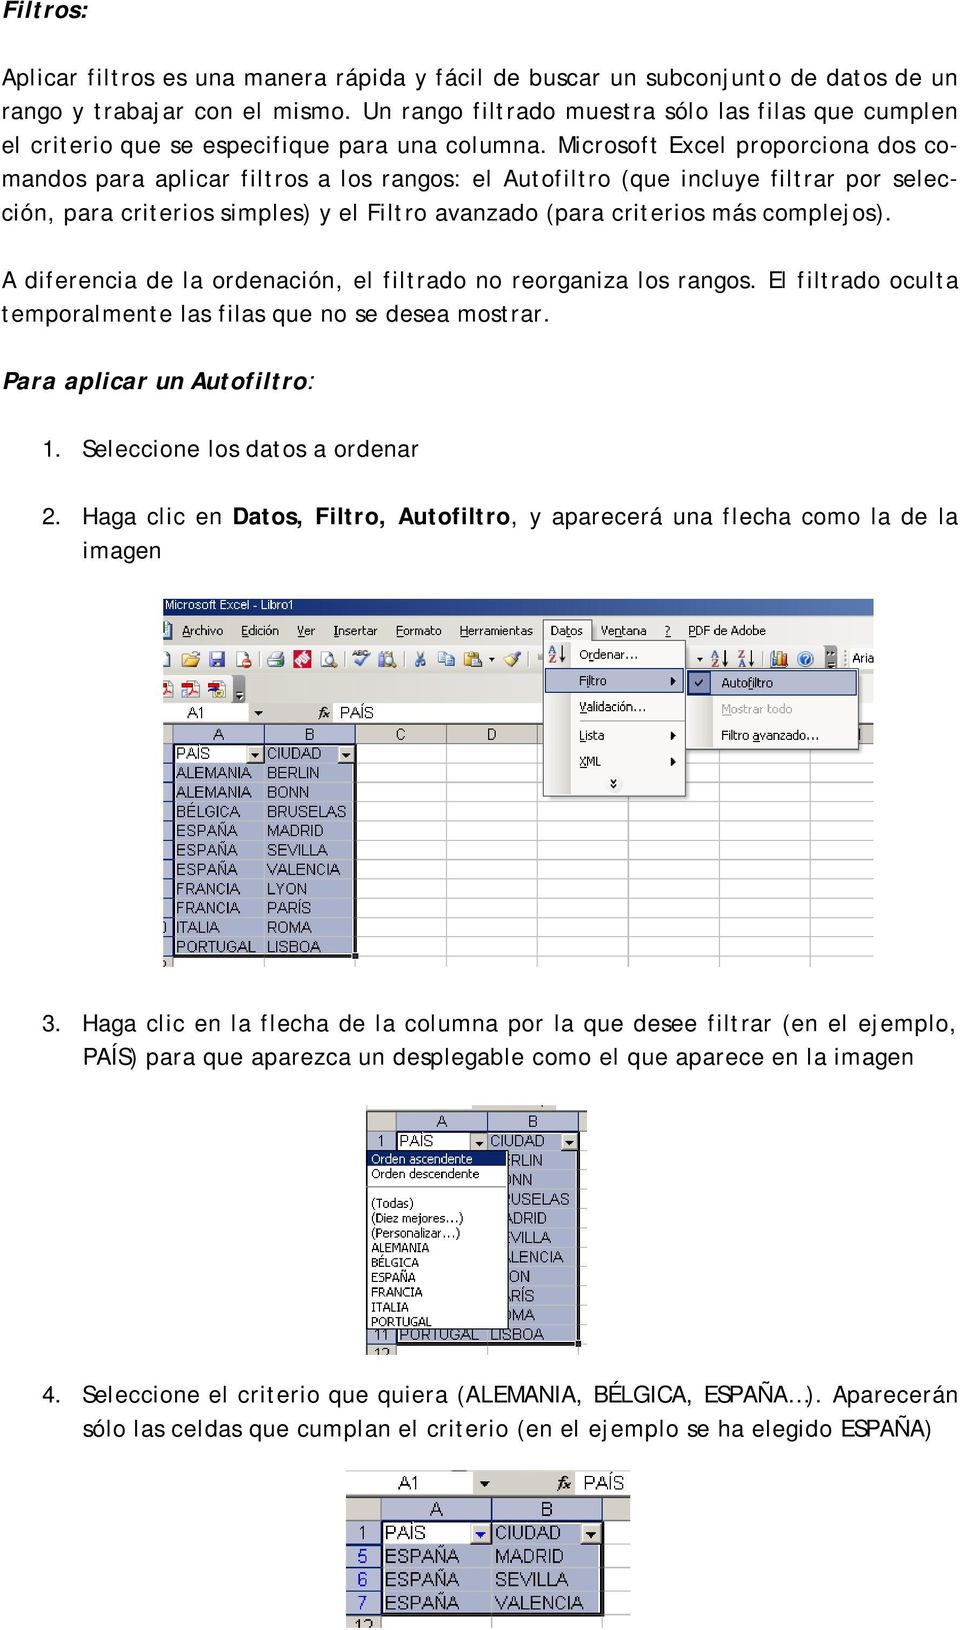 Microsoft Excel proporciona dos comandos para aplicar filtros a los rangos: el Autofiltro (que incluye filtrar por selección, para criterios simples) y el Filtro avanzado (para criterios más